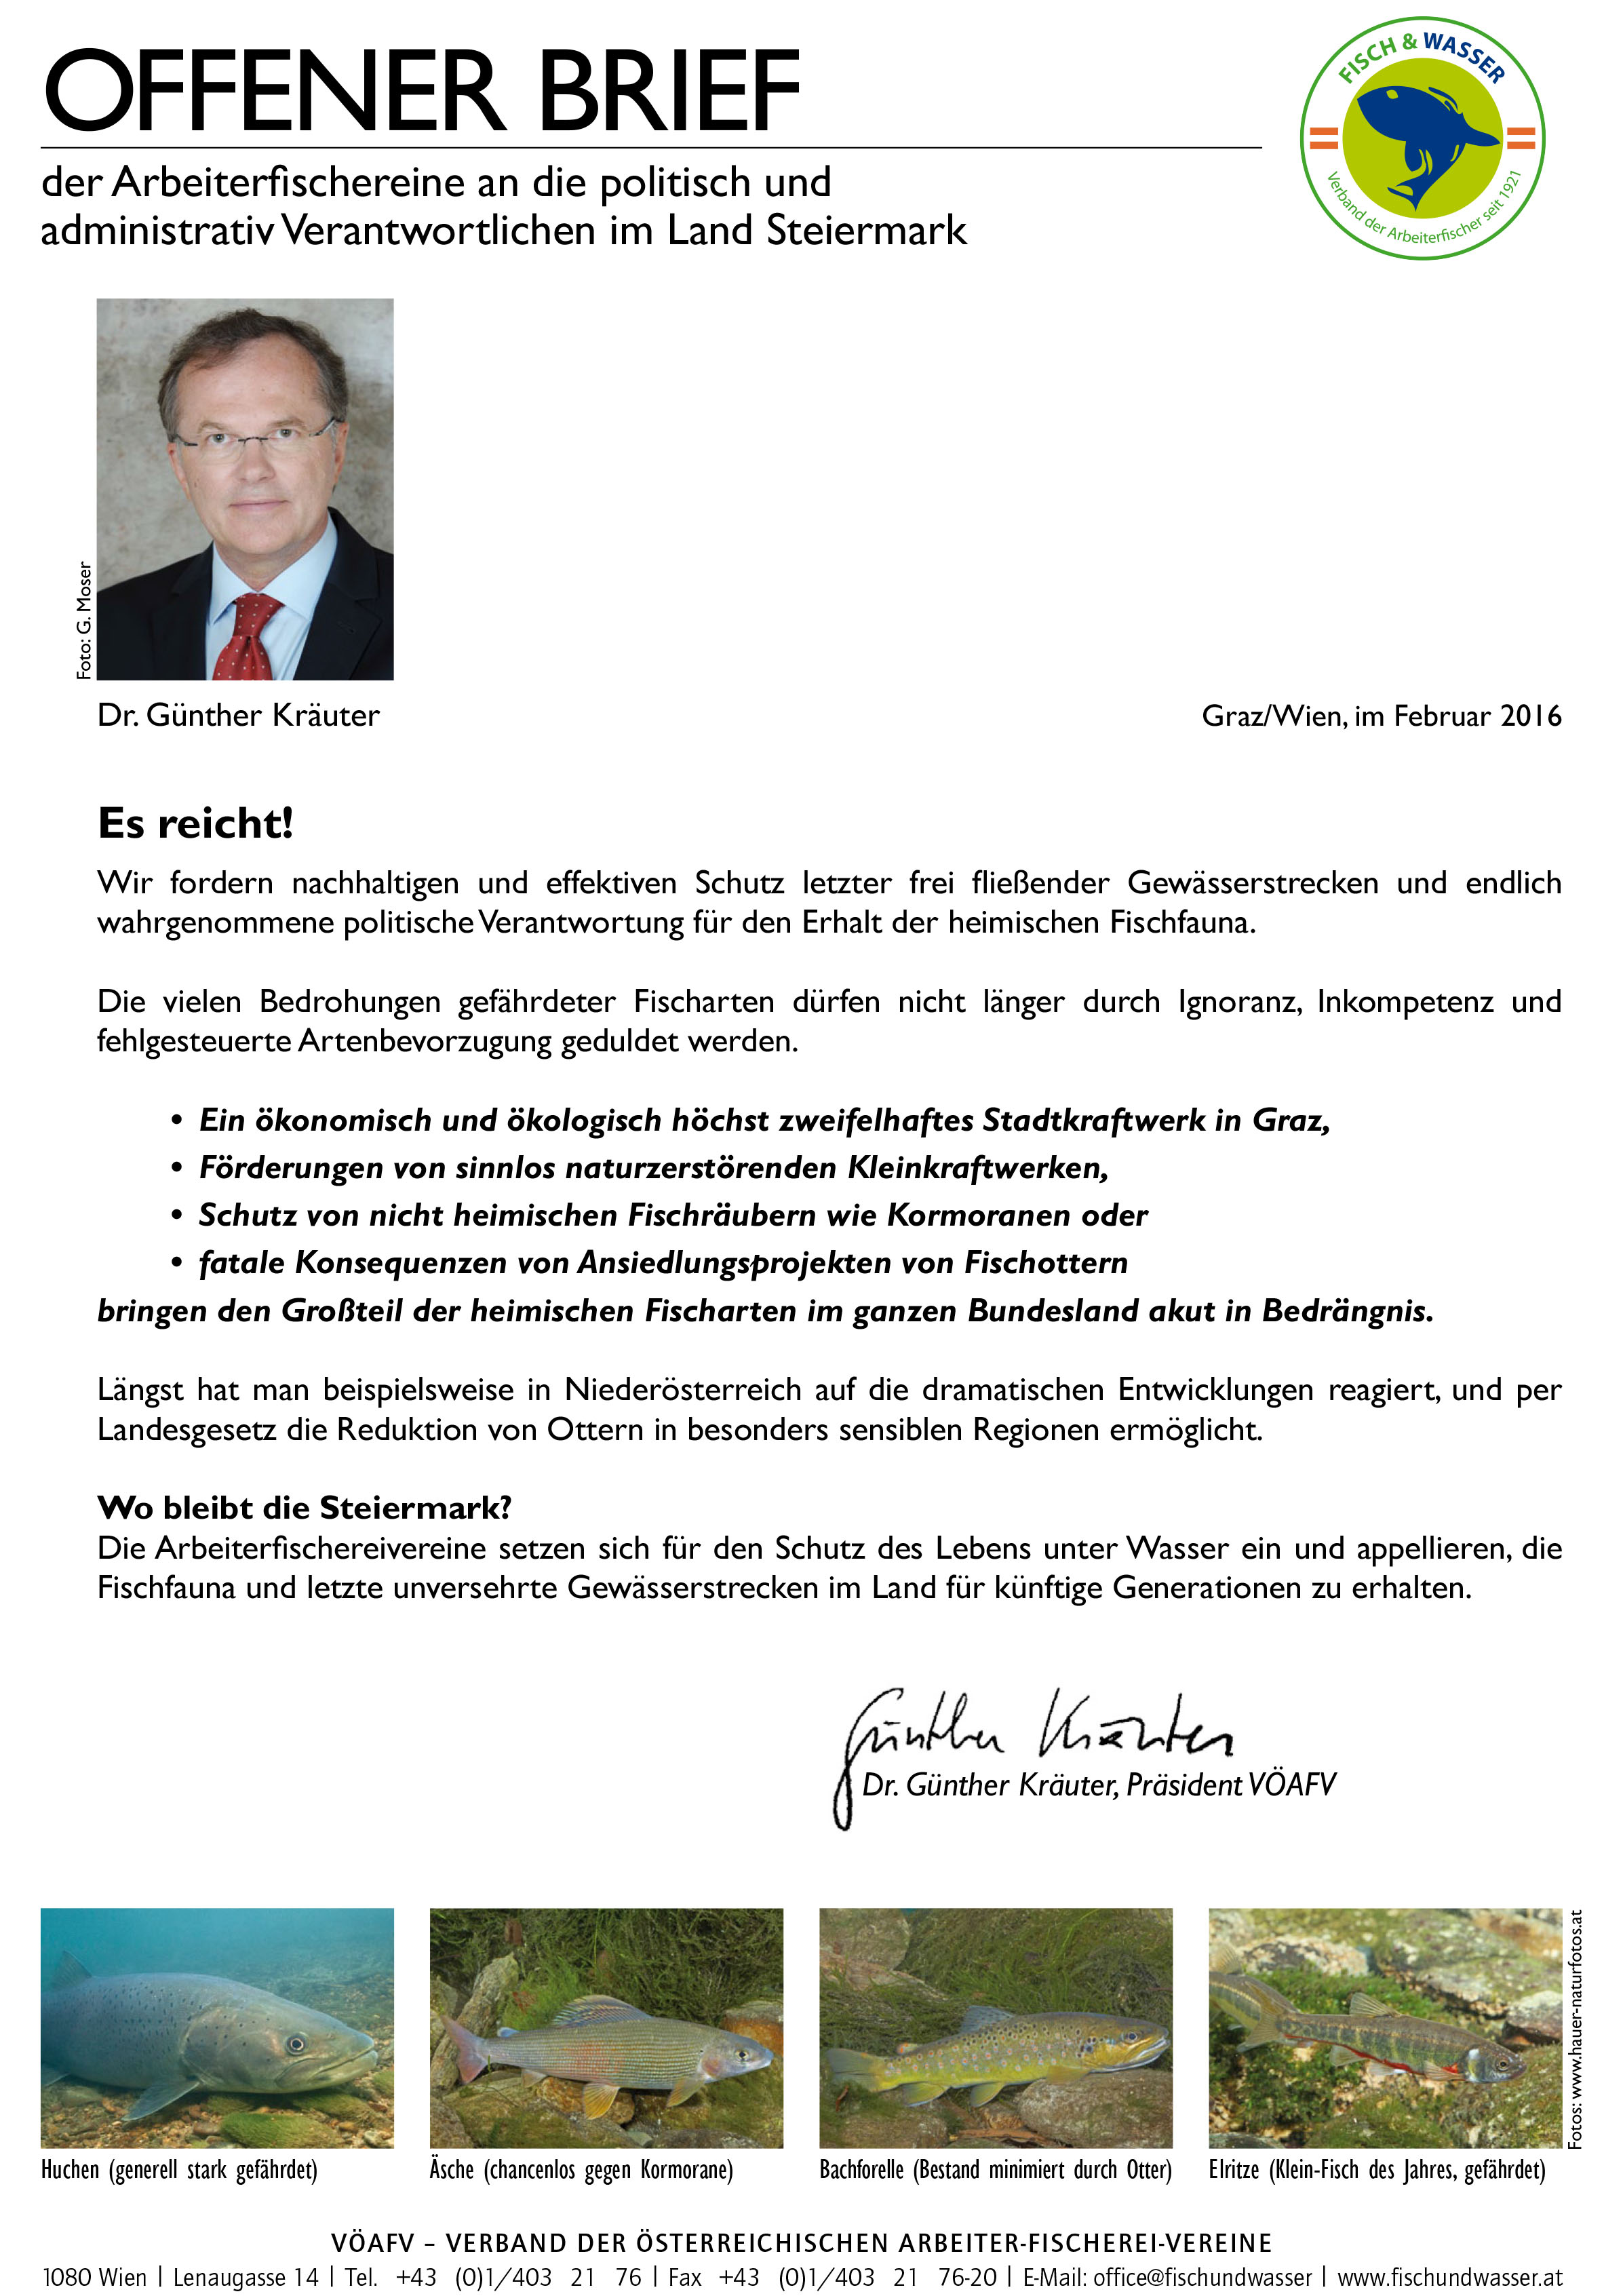 Offener Brief von Dr. Günther Kräuter an die steirische Landespolitik, sich der Verantwortung zum Gewässerschutz bewusst zu werden.